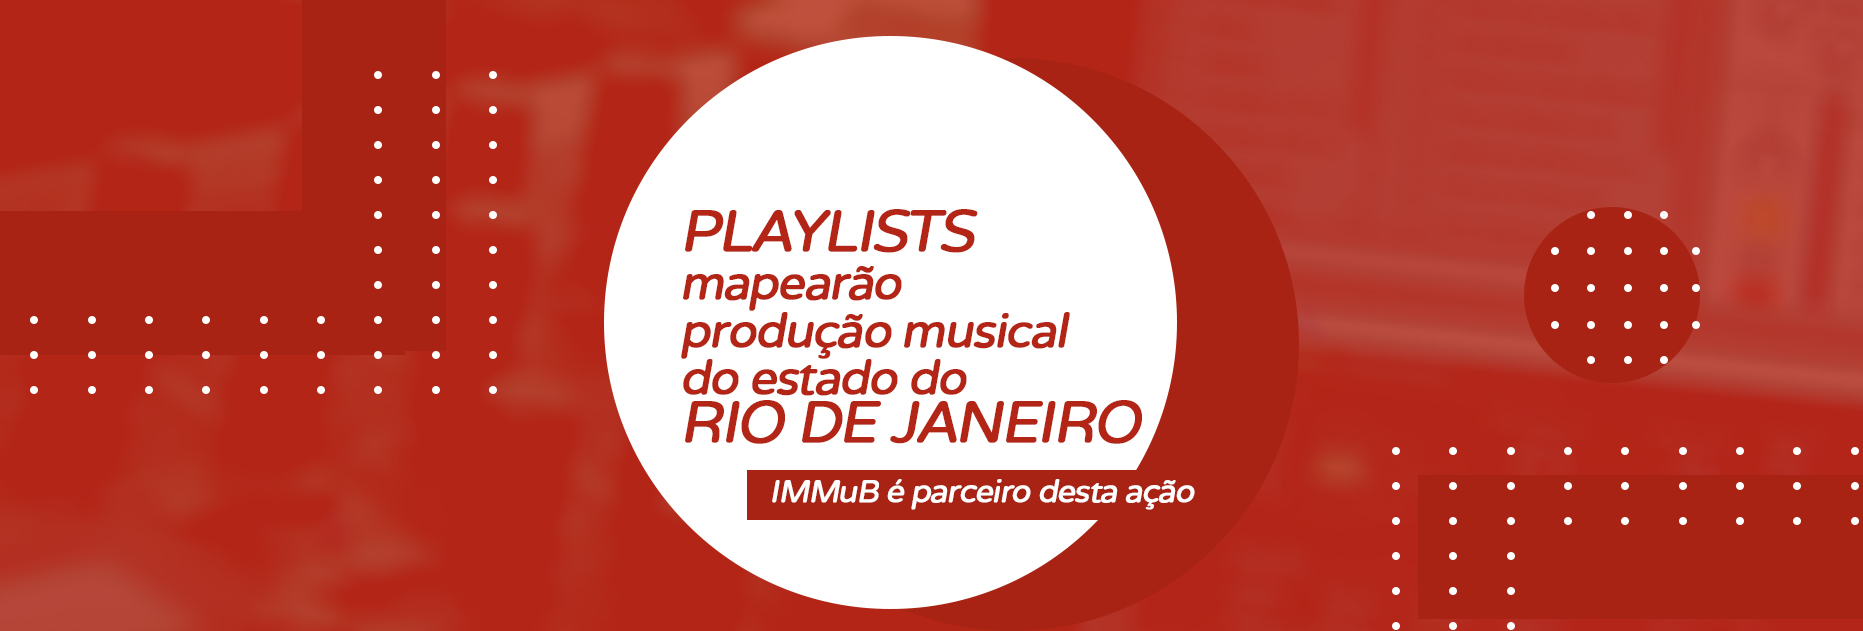 Playlists mapearão produção musical do estado do Rio de Janeiro